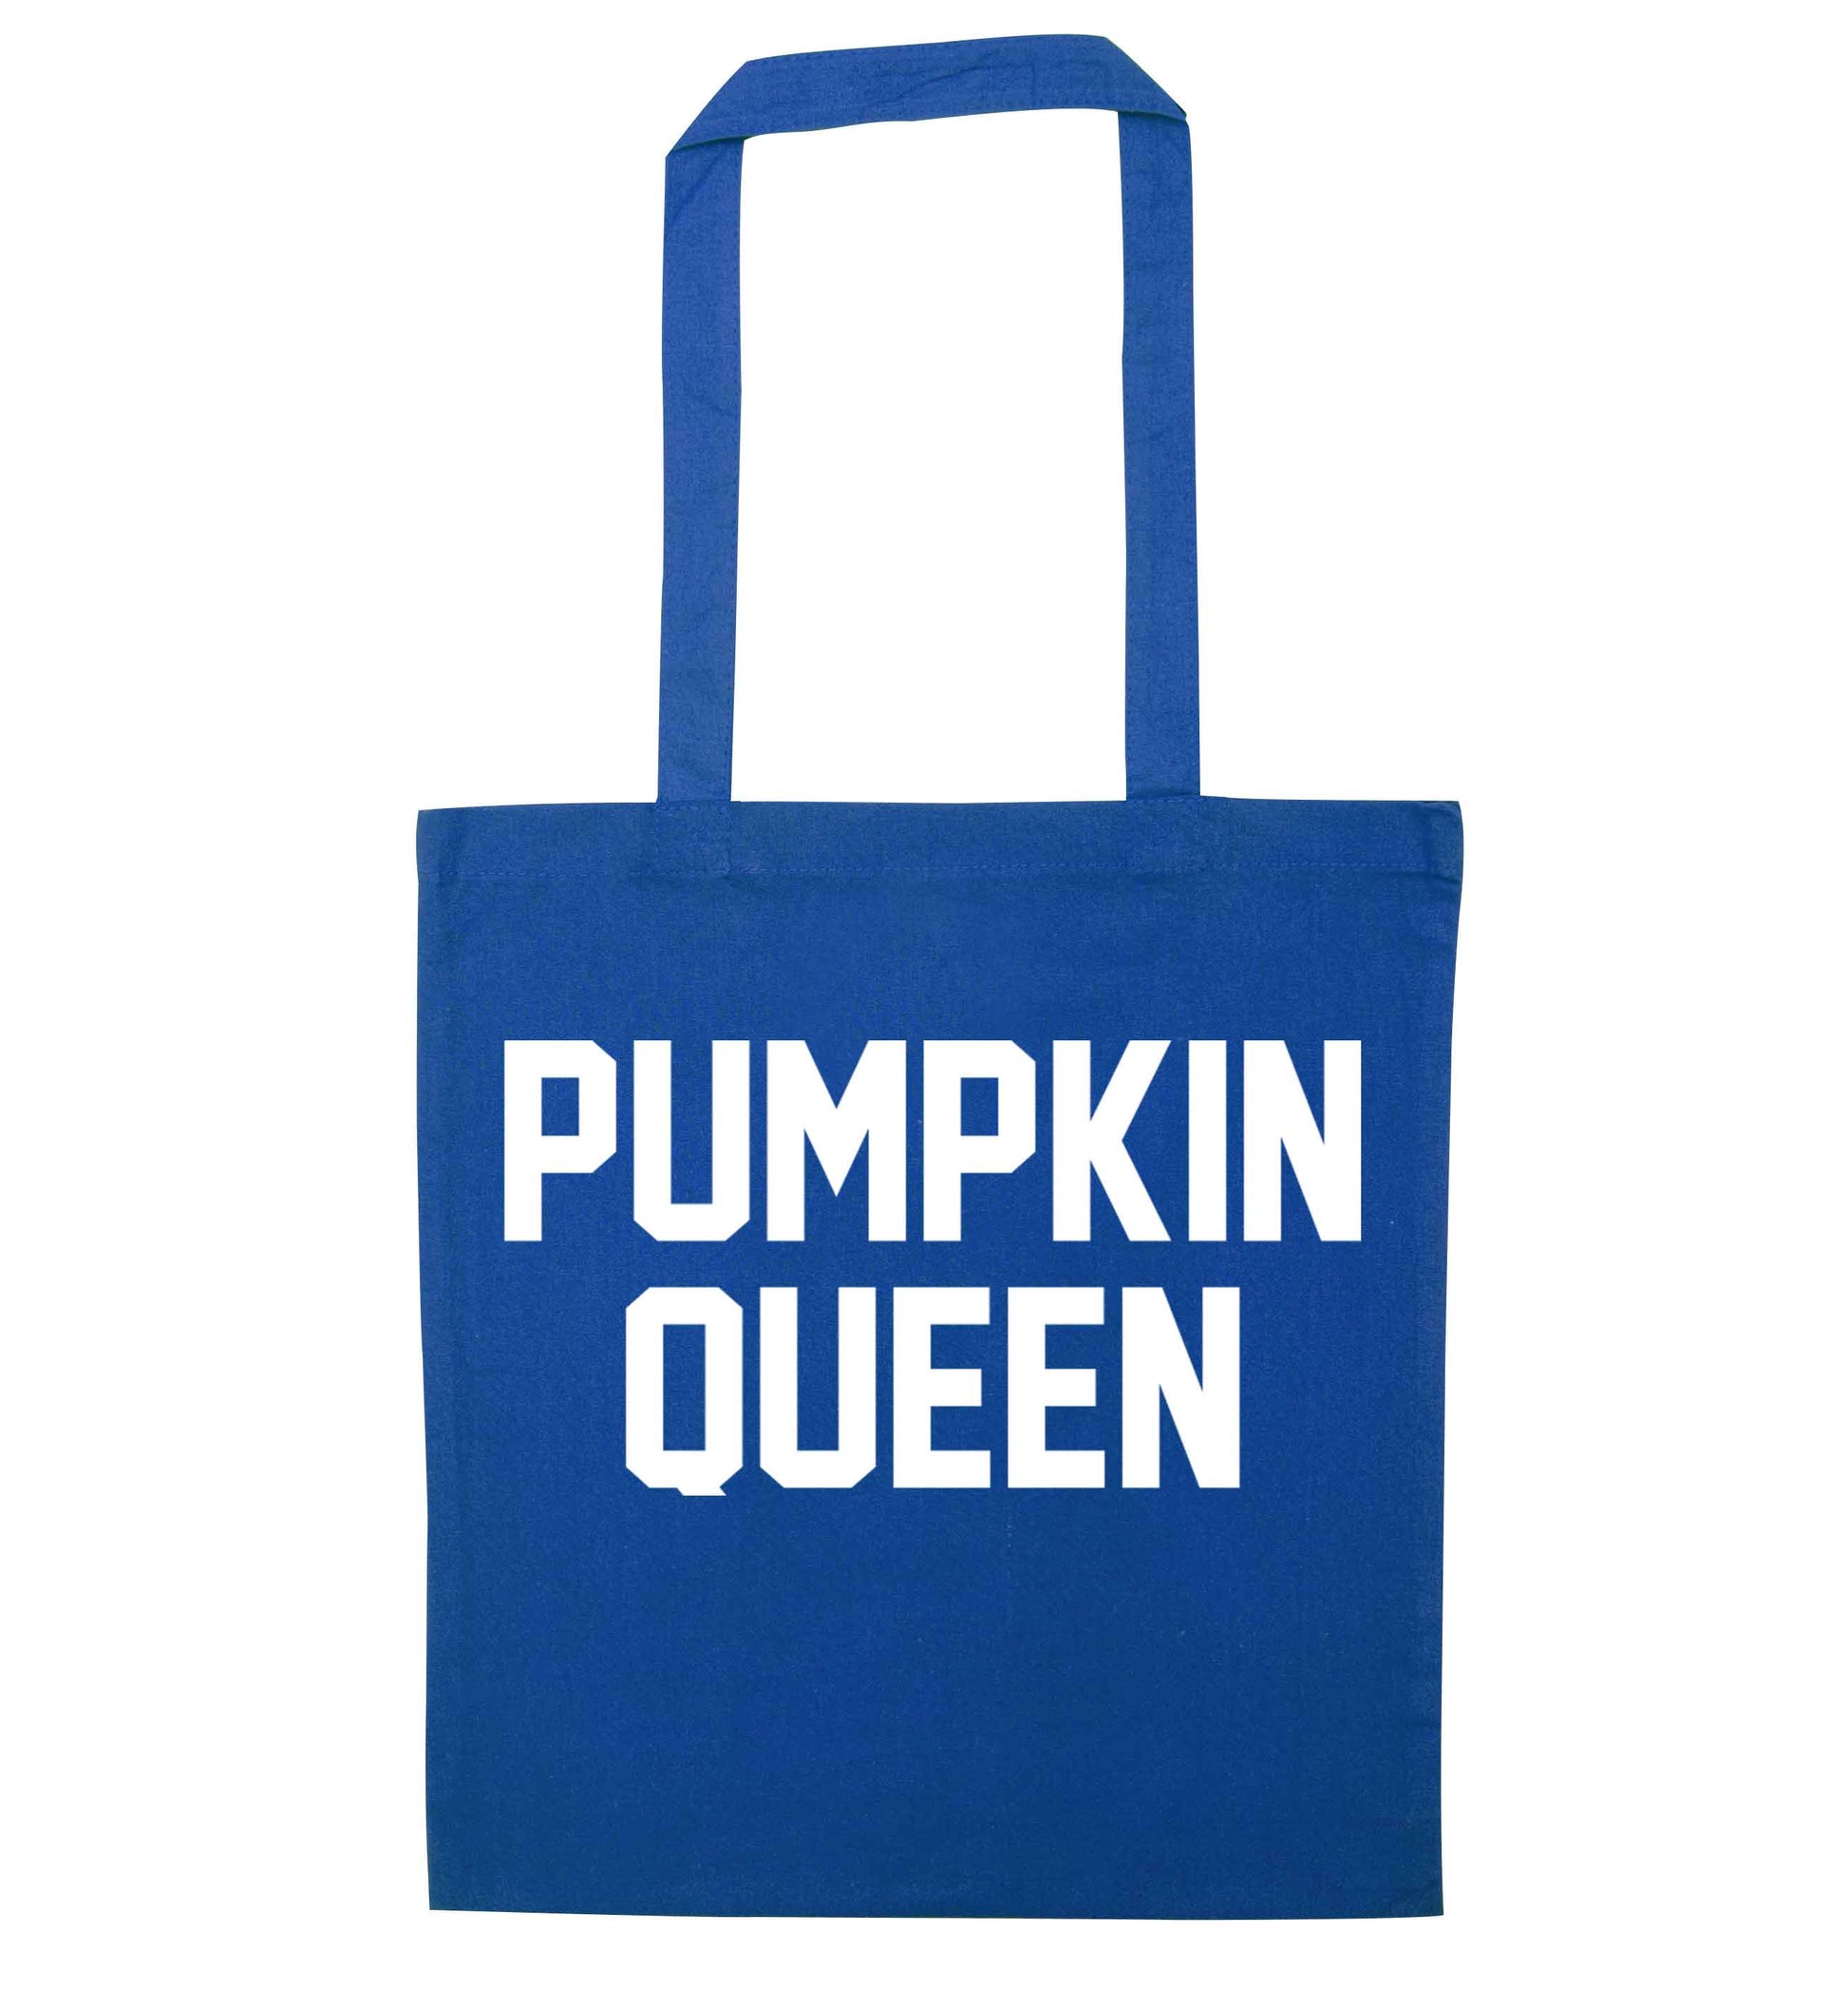 Pumpkin Queen blue tote bag